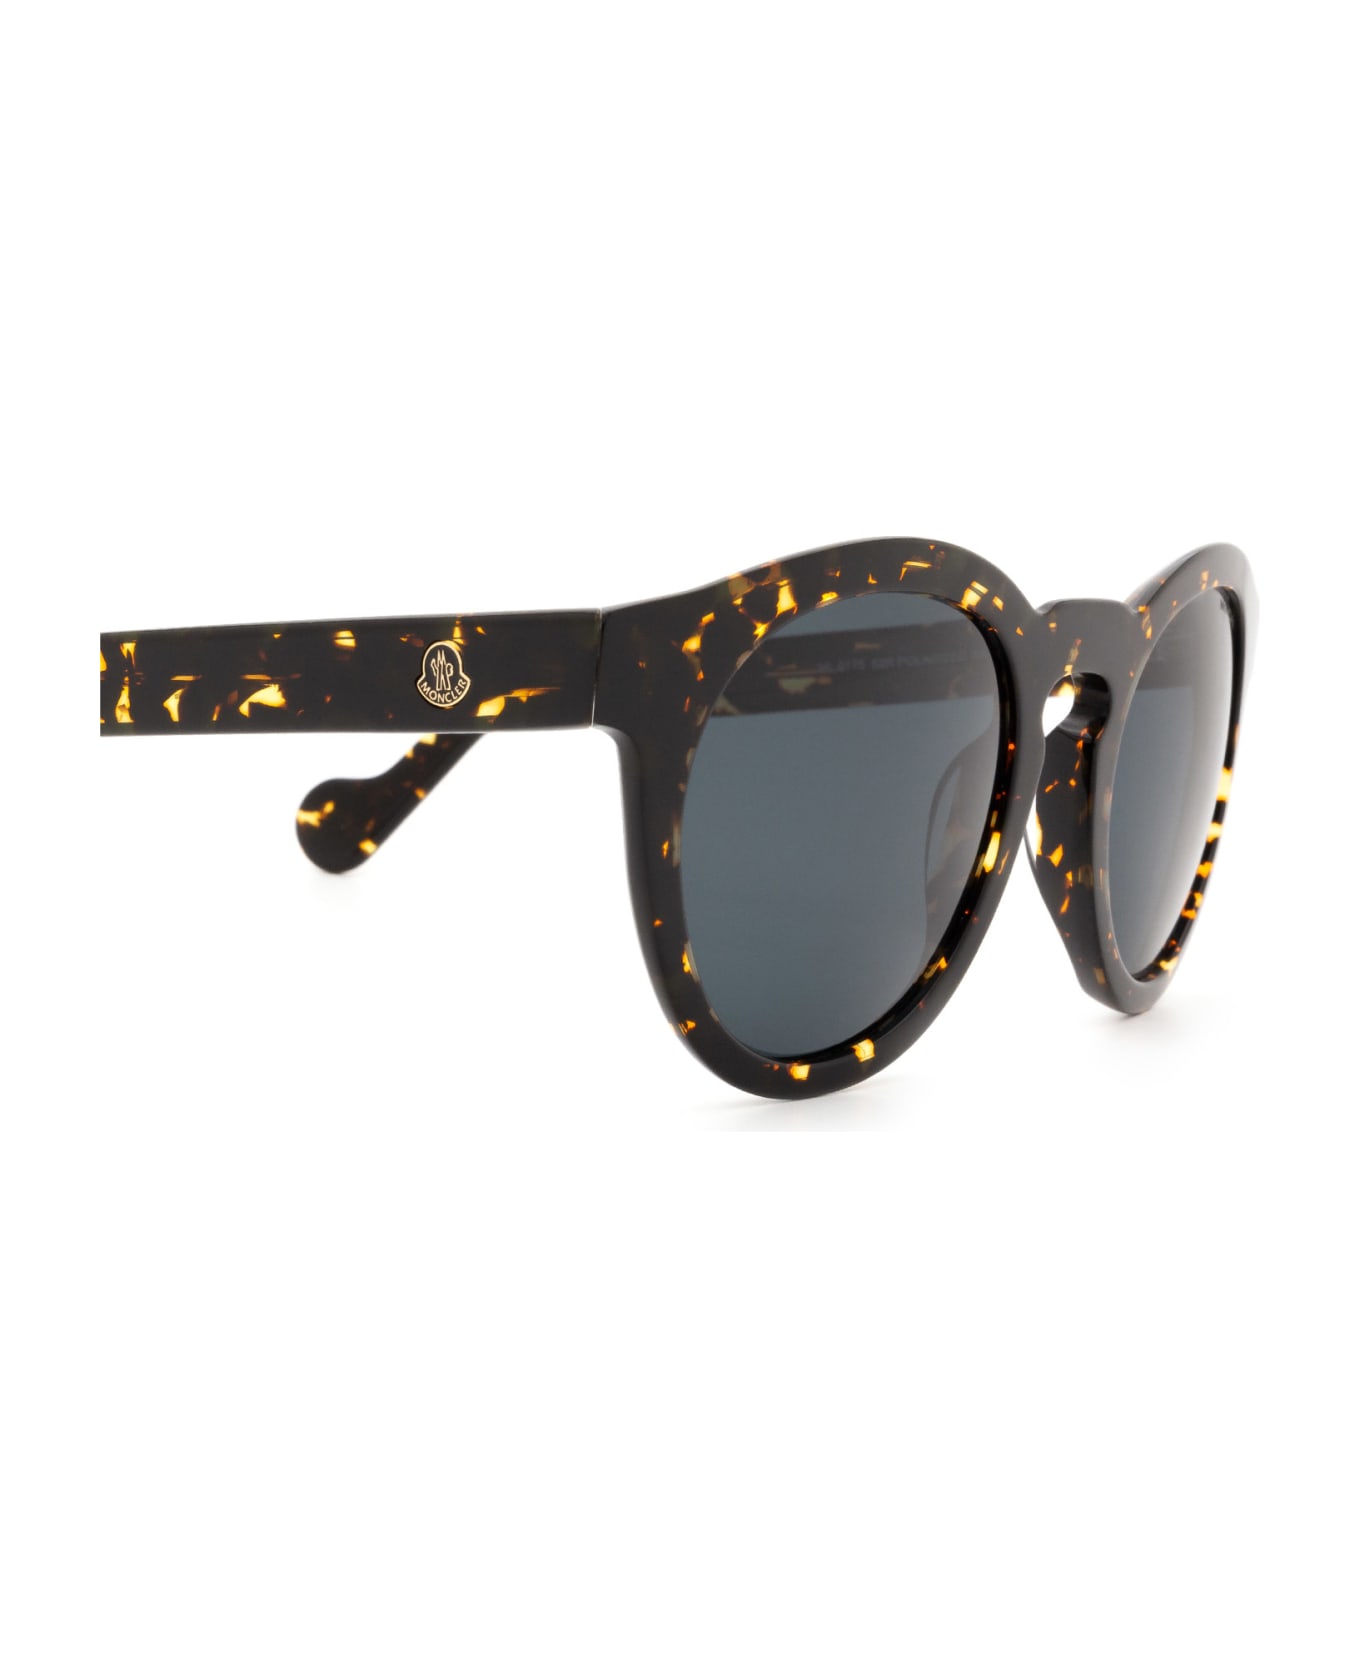 Moncler Eyewear Ml0175 Dark Havana Sunglasses - Dark Havana